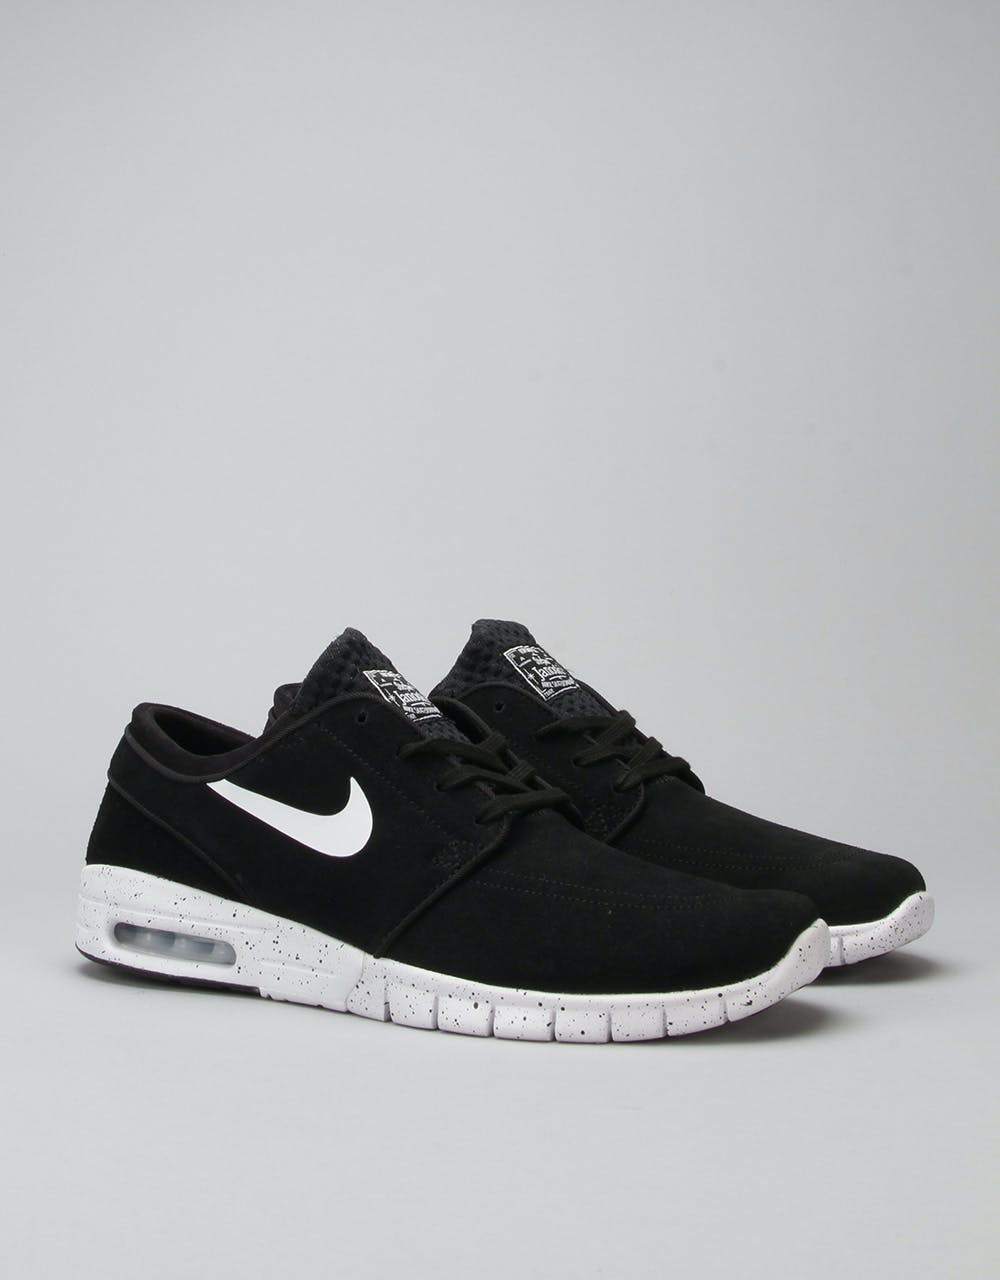 Nike SB Stefan Janoski Max Suede Shoes - Black/White